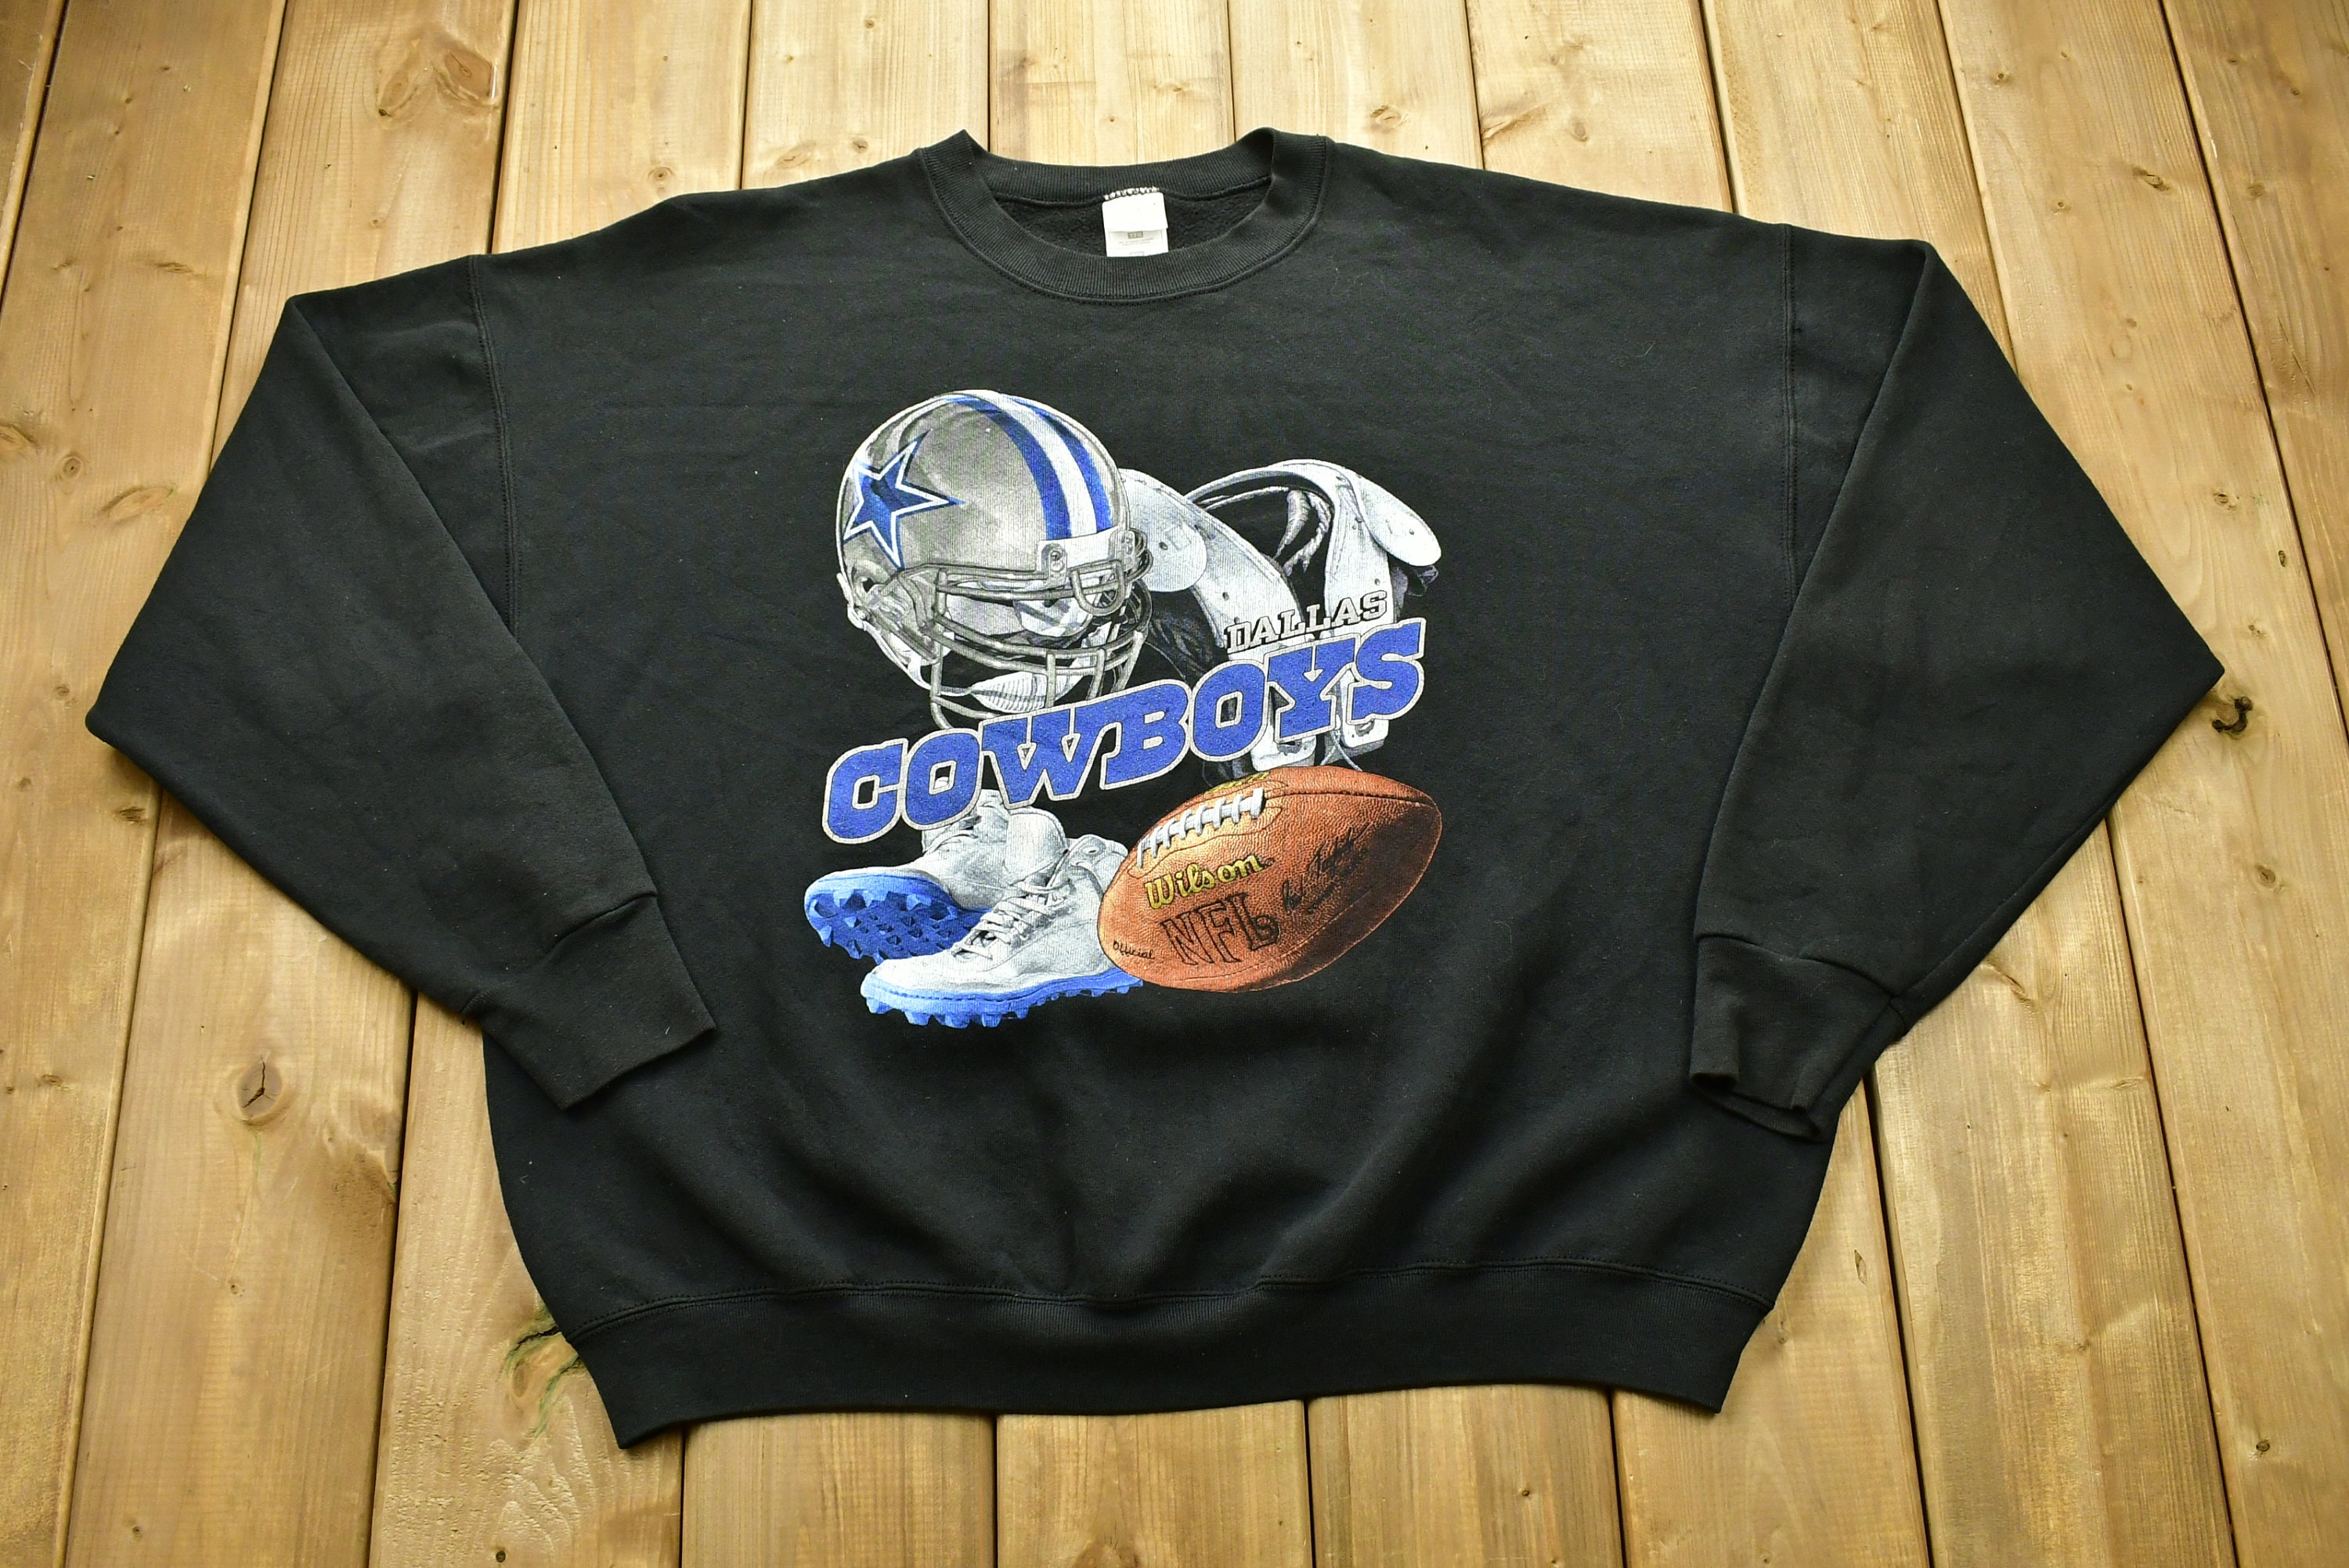 Vintage 1990s Dallas Cowboys Crewneck Sweatshirt / Sports / 90s Crewneck /  NFL / Streetwear / Athleisure -  Canada